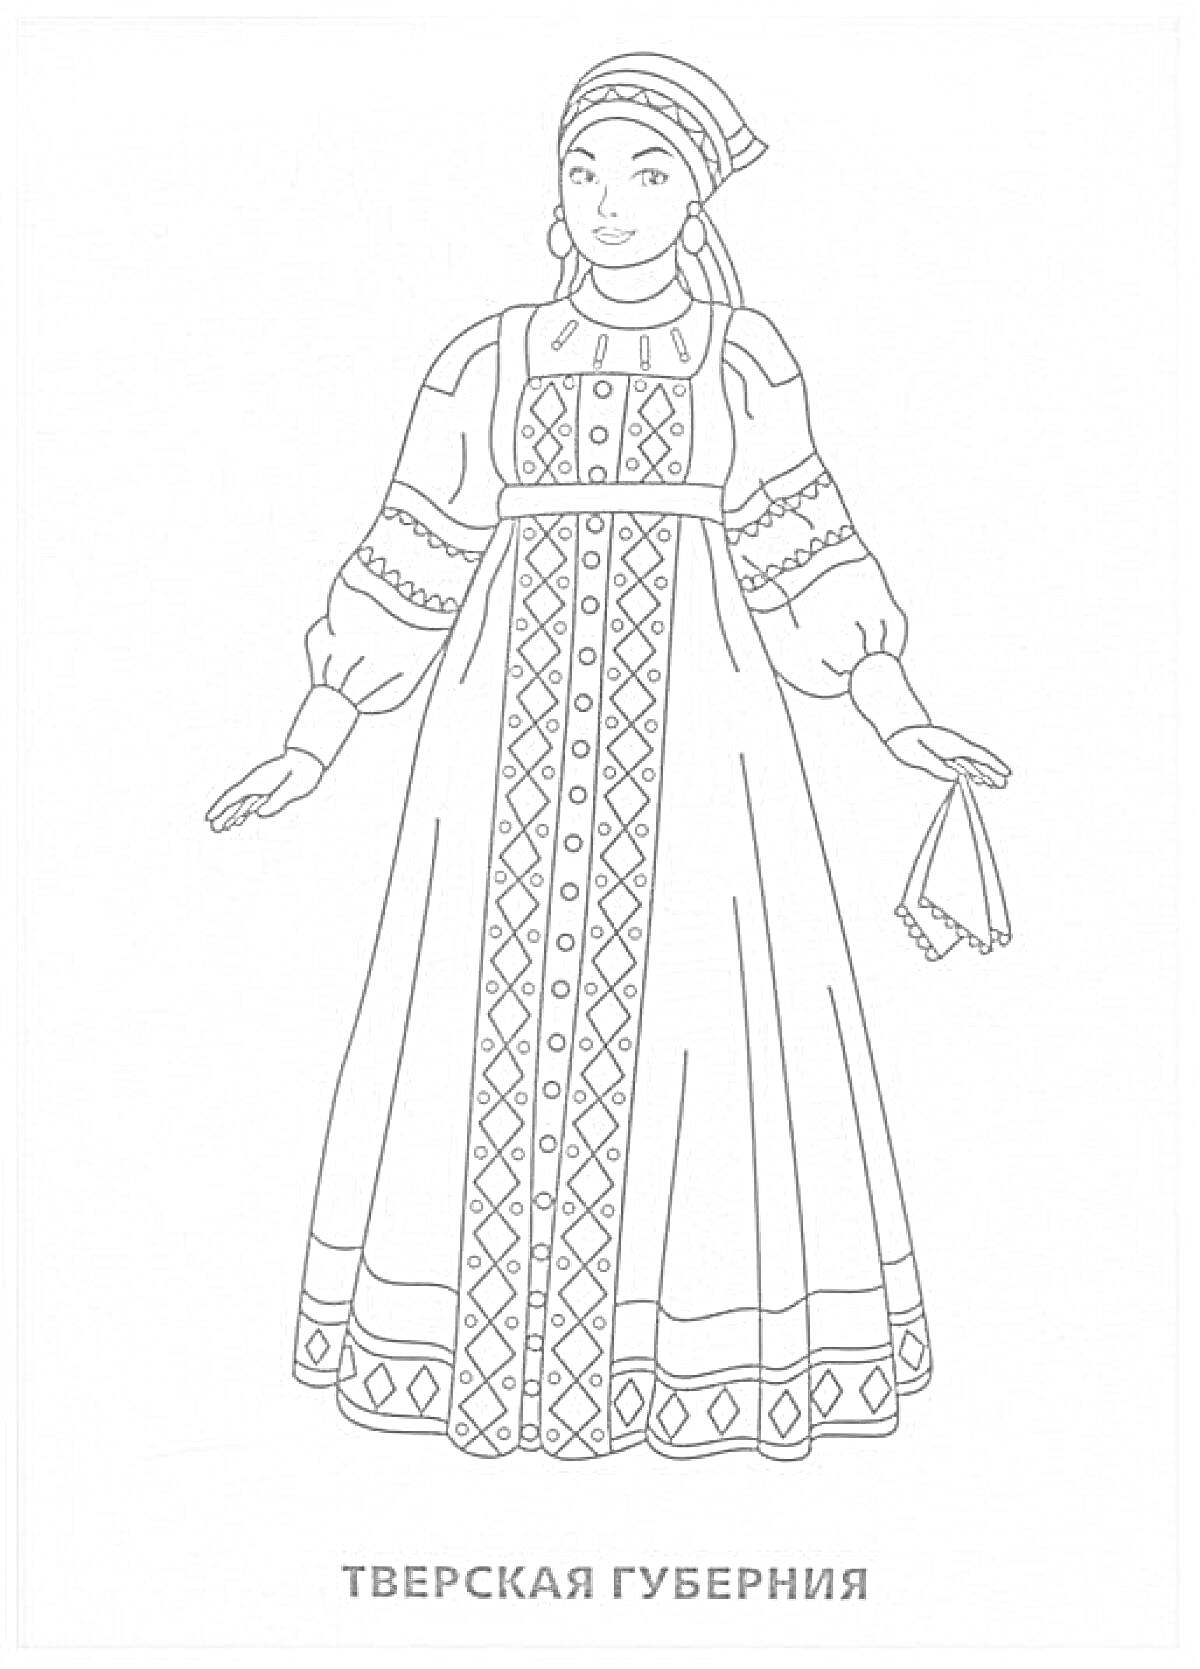 Женский народный костюм Тверской губернии с кокошником, сарафаном с вышивкой, рубахой с узорами и платком